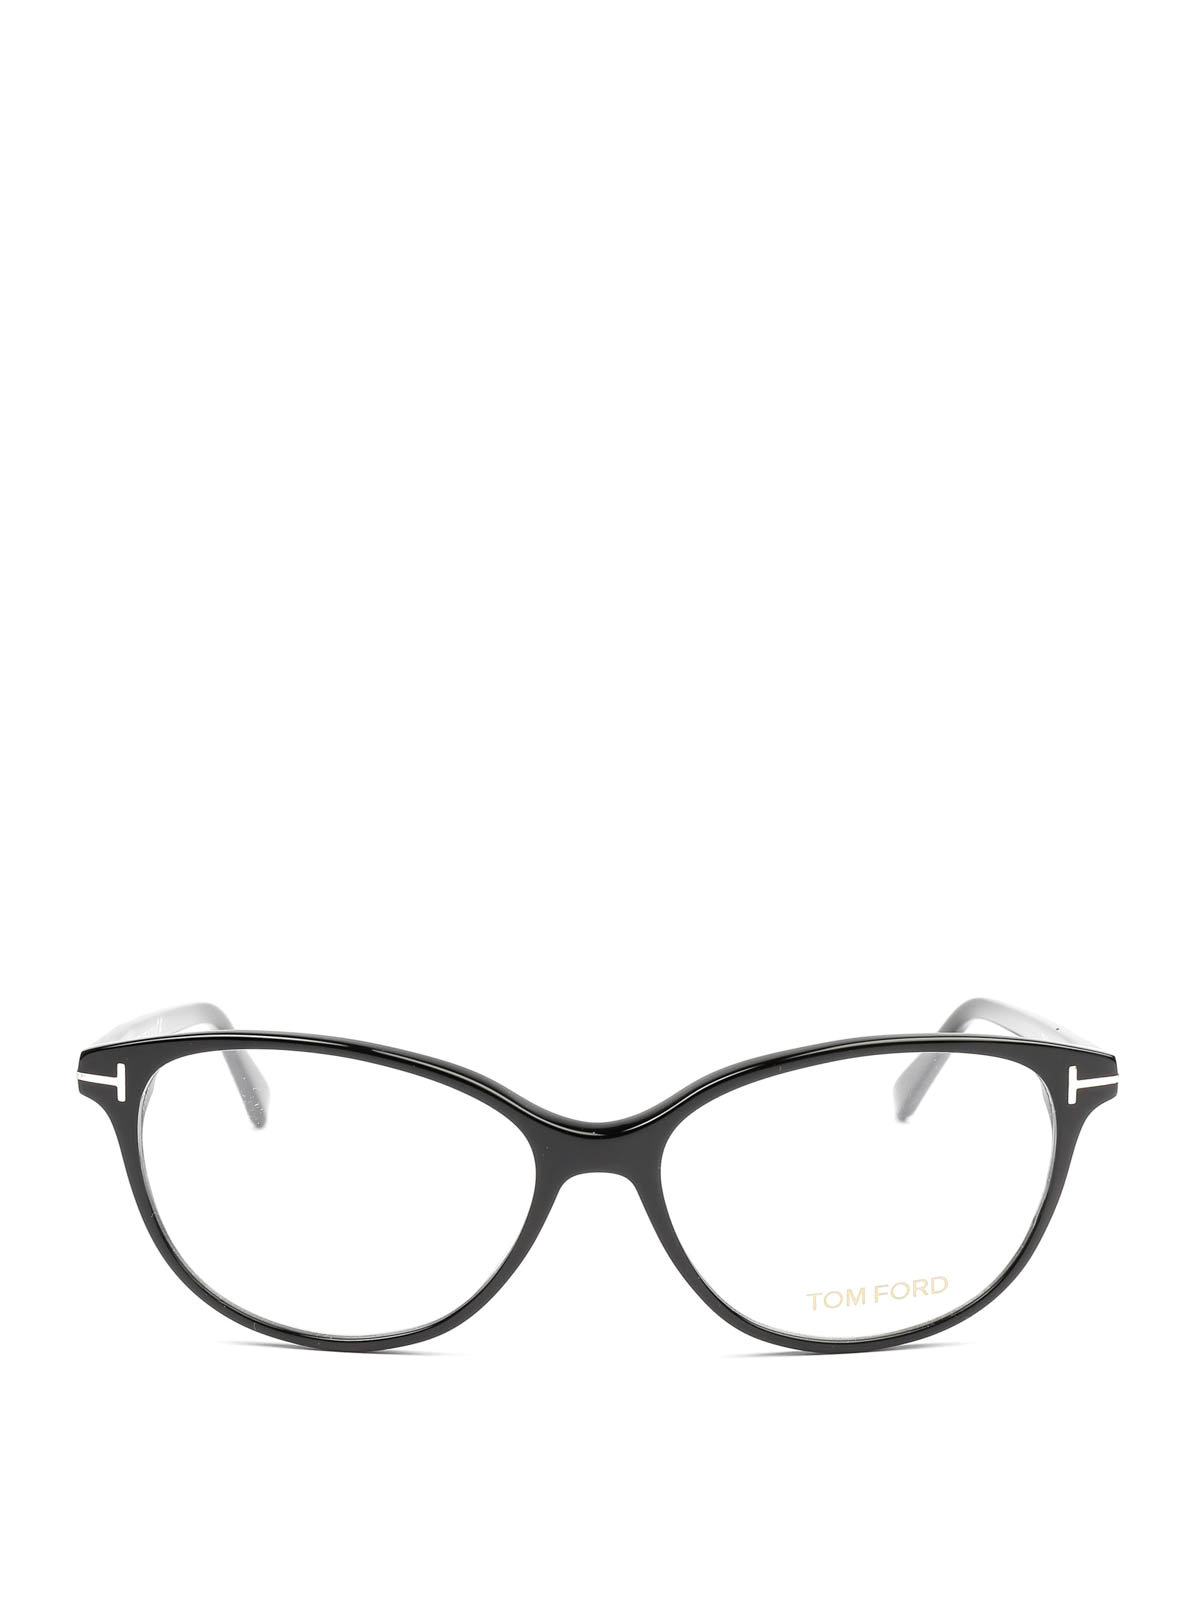 Glasses Tom Ford - Black cat-eye optical glasses - FT5421001 